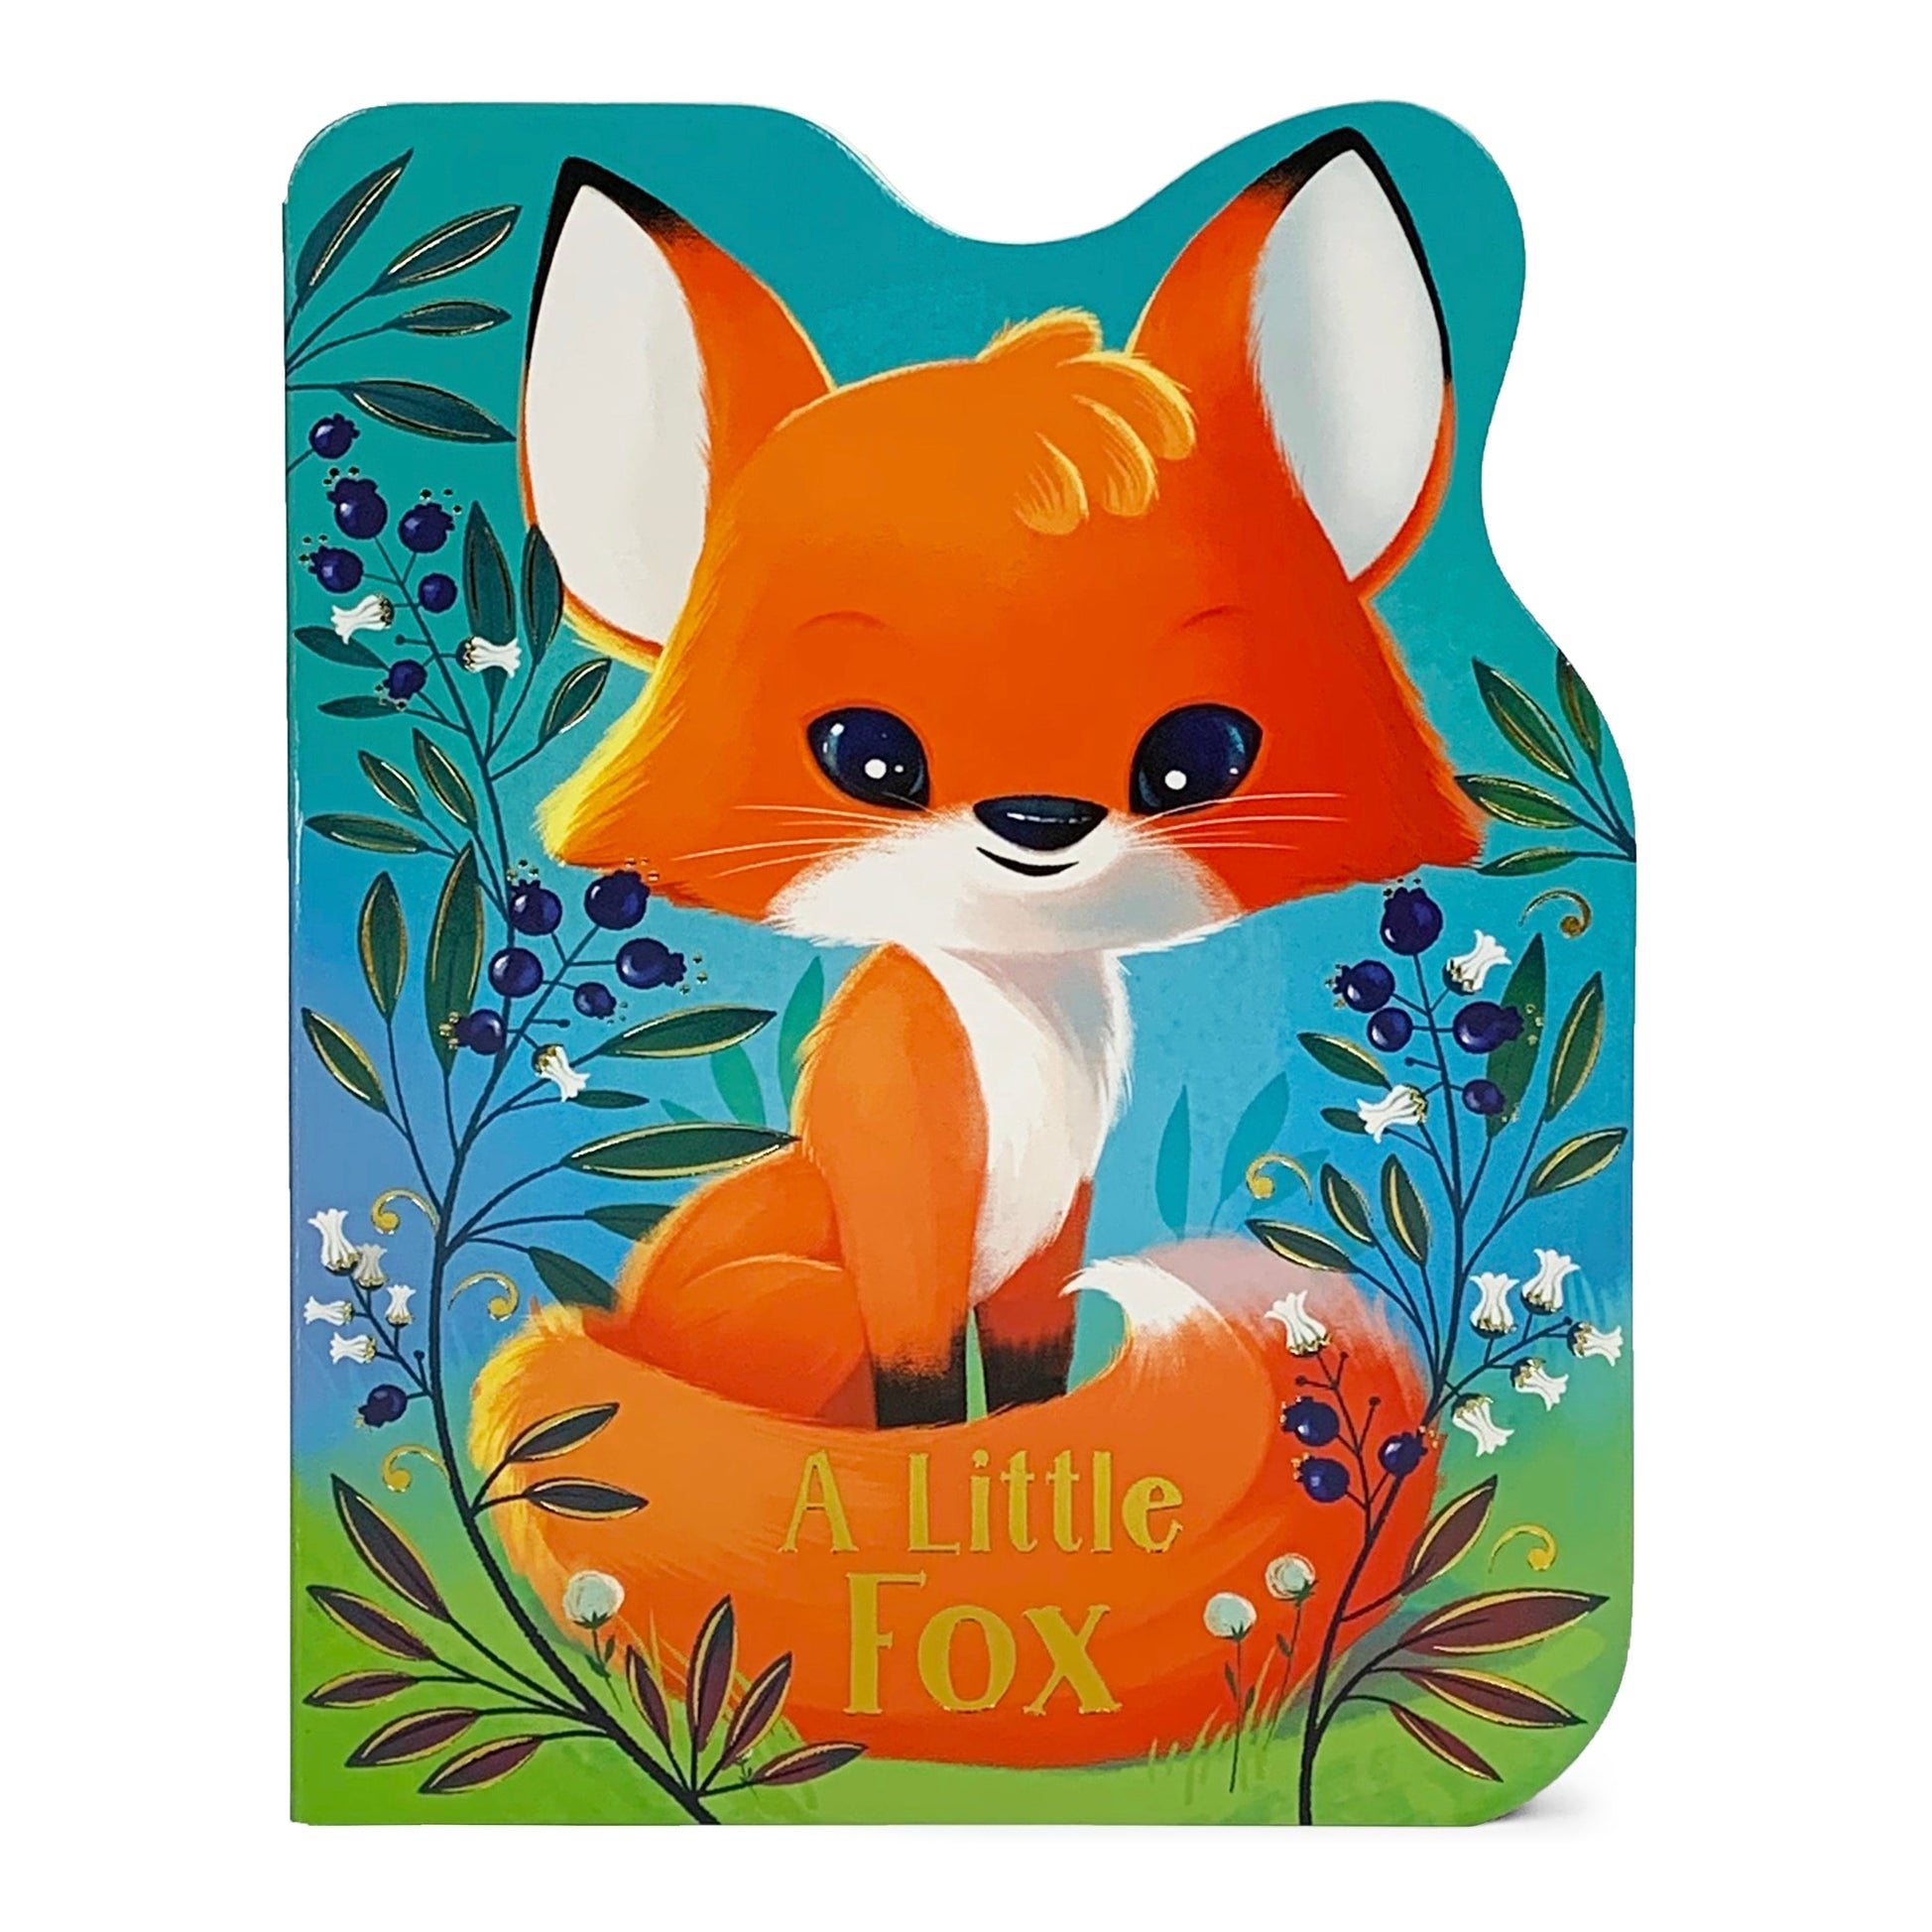 A Little Fox Shaped Board Book